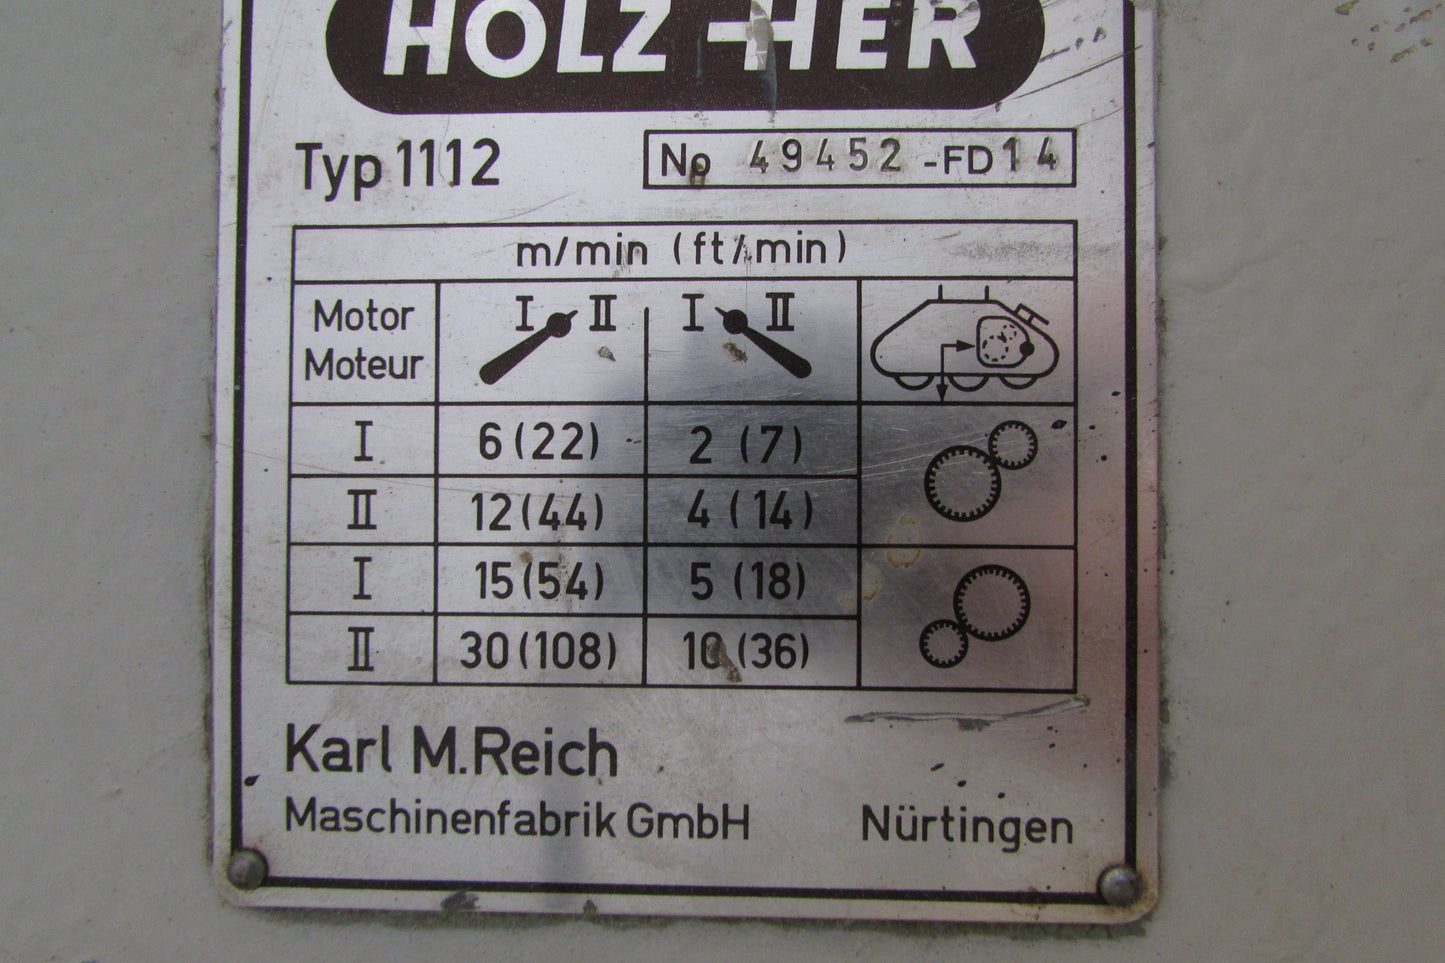 HolzHer Vorschub Typ 1112